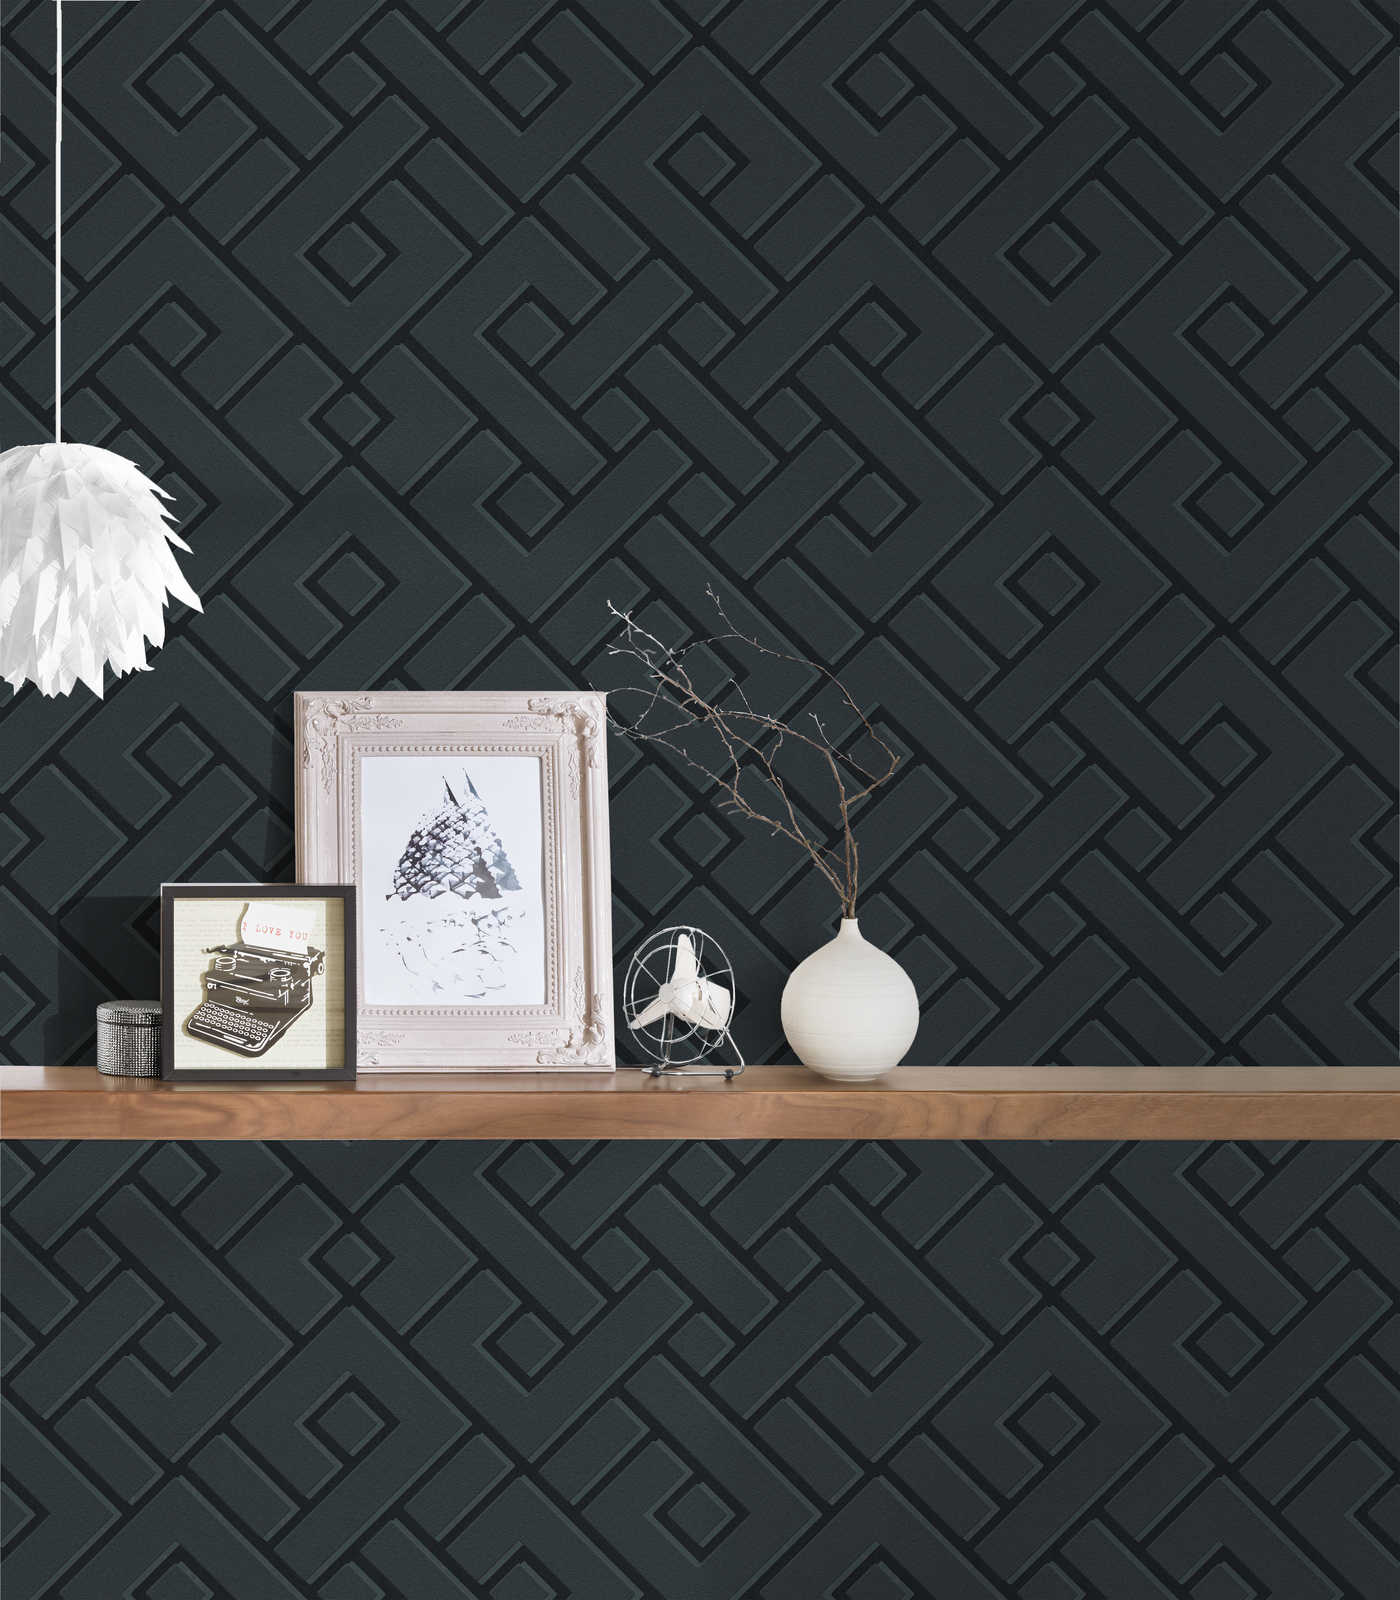             MICHALSKY behang zwart met 3D patroon & mat-glanseffect
        